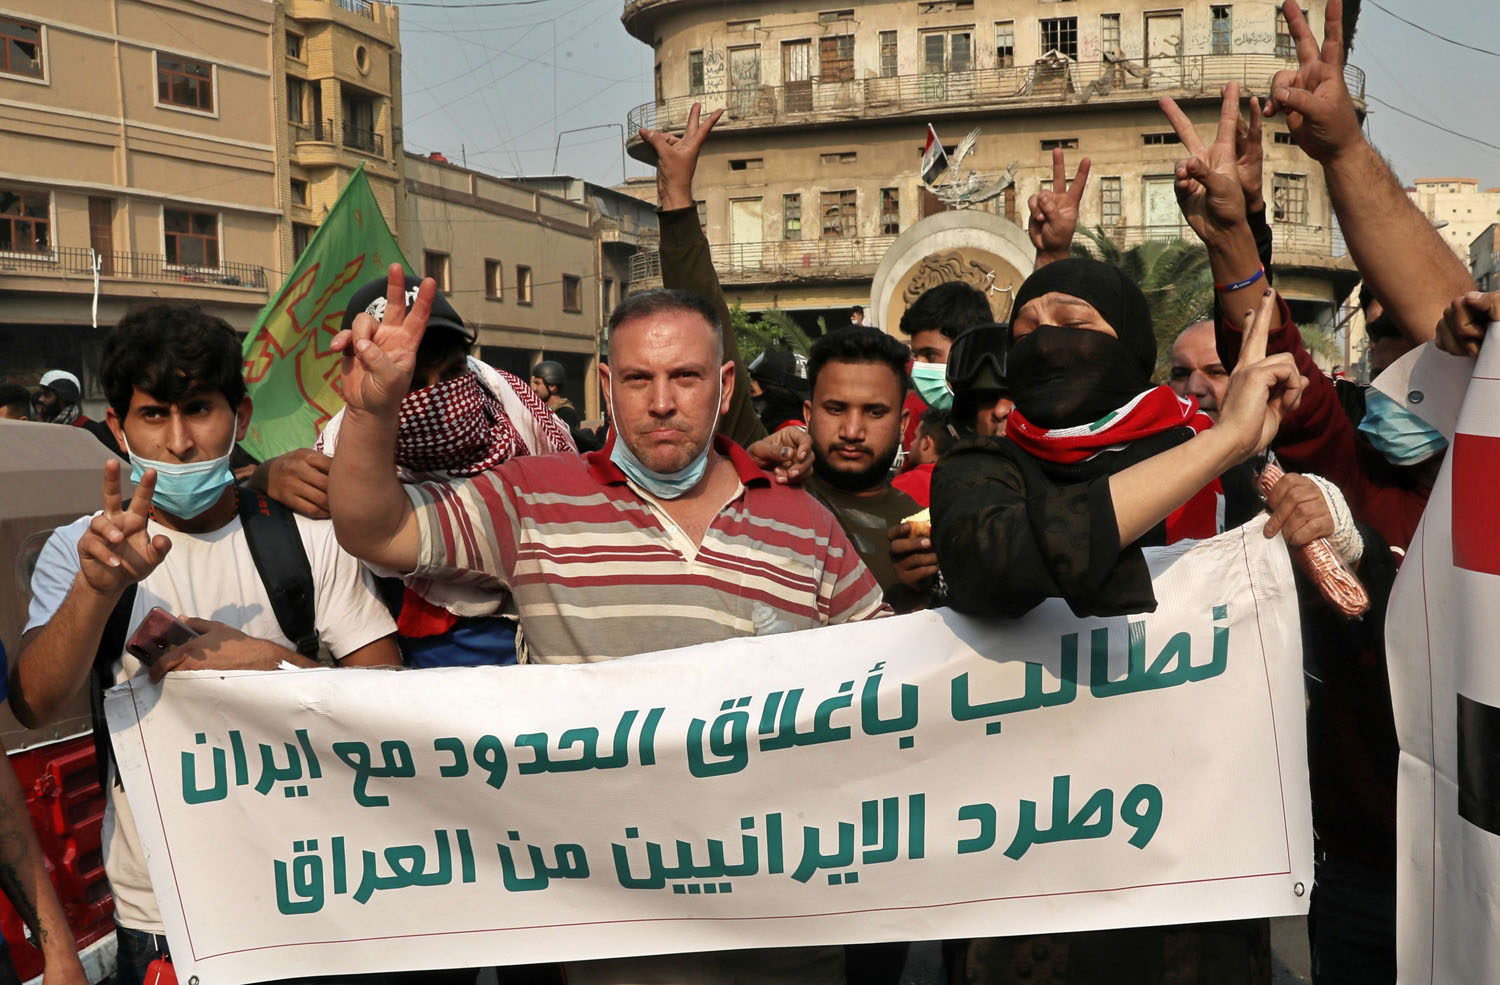 عراقيون يتظاهرون في بغداد للمطالبة بقطع العلاقة مع إيران